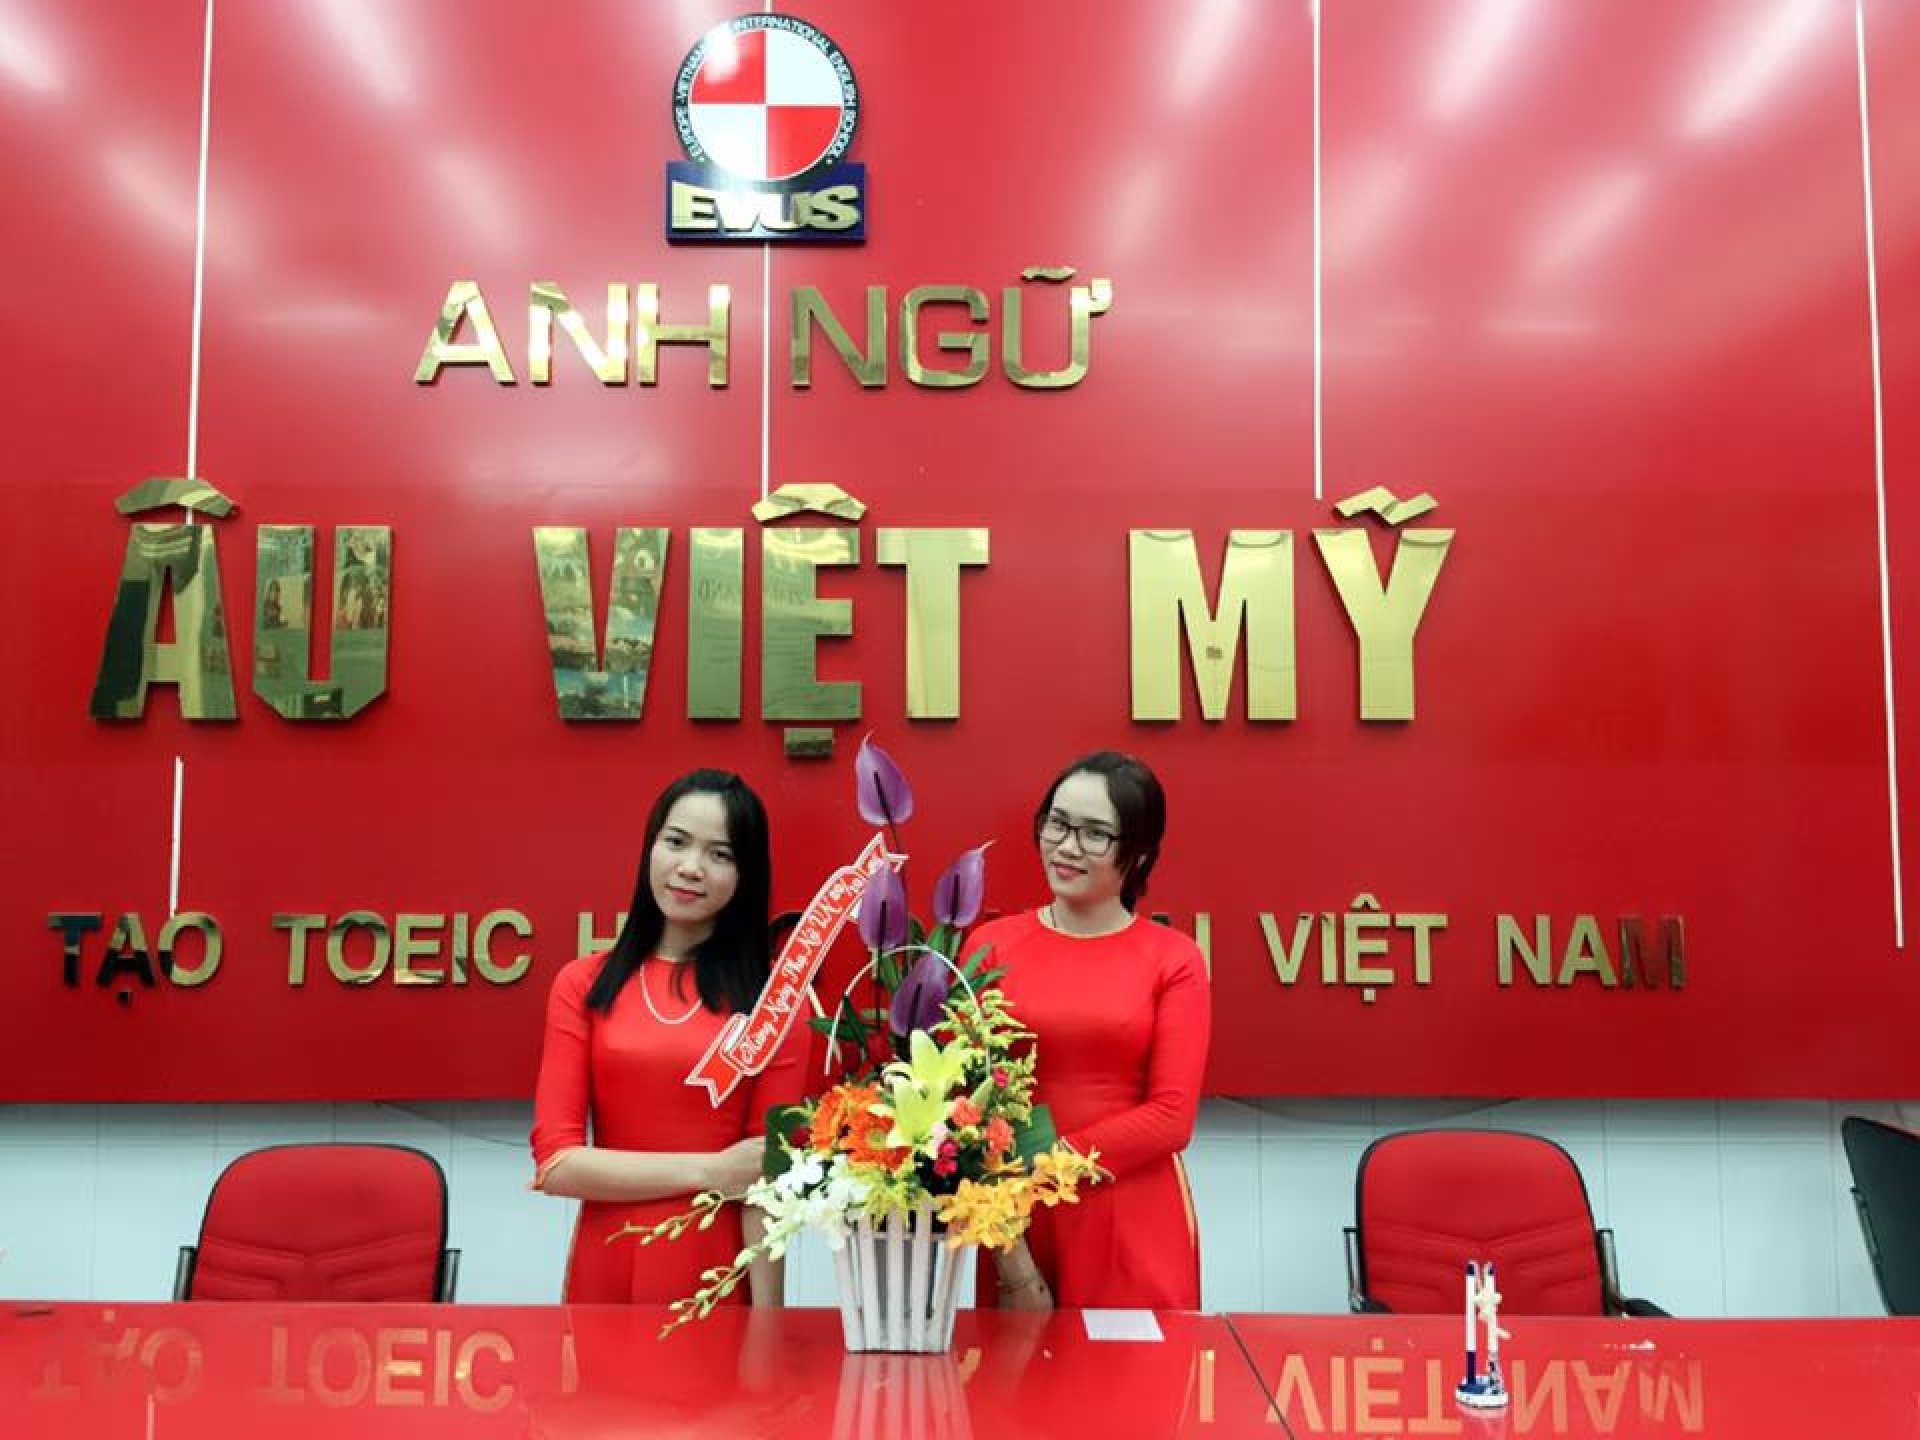 Đội ngũ giảng viên ở Trung tâm Anh ngữ Âu Việt Mỹ có gì đặc biệt?